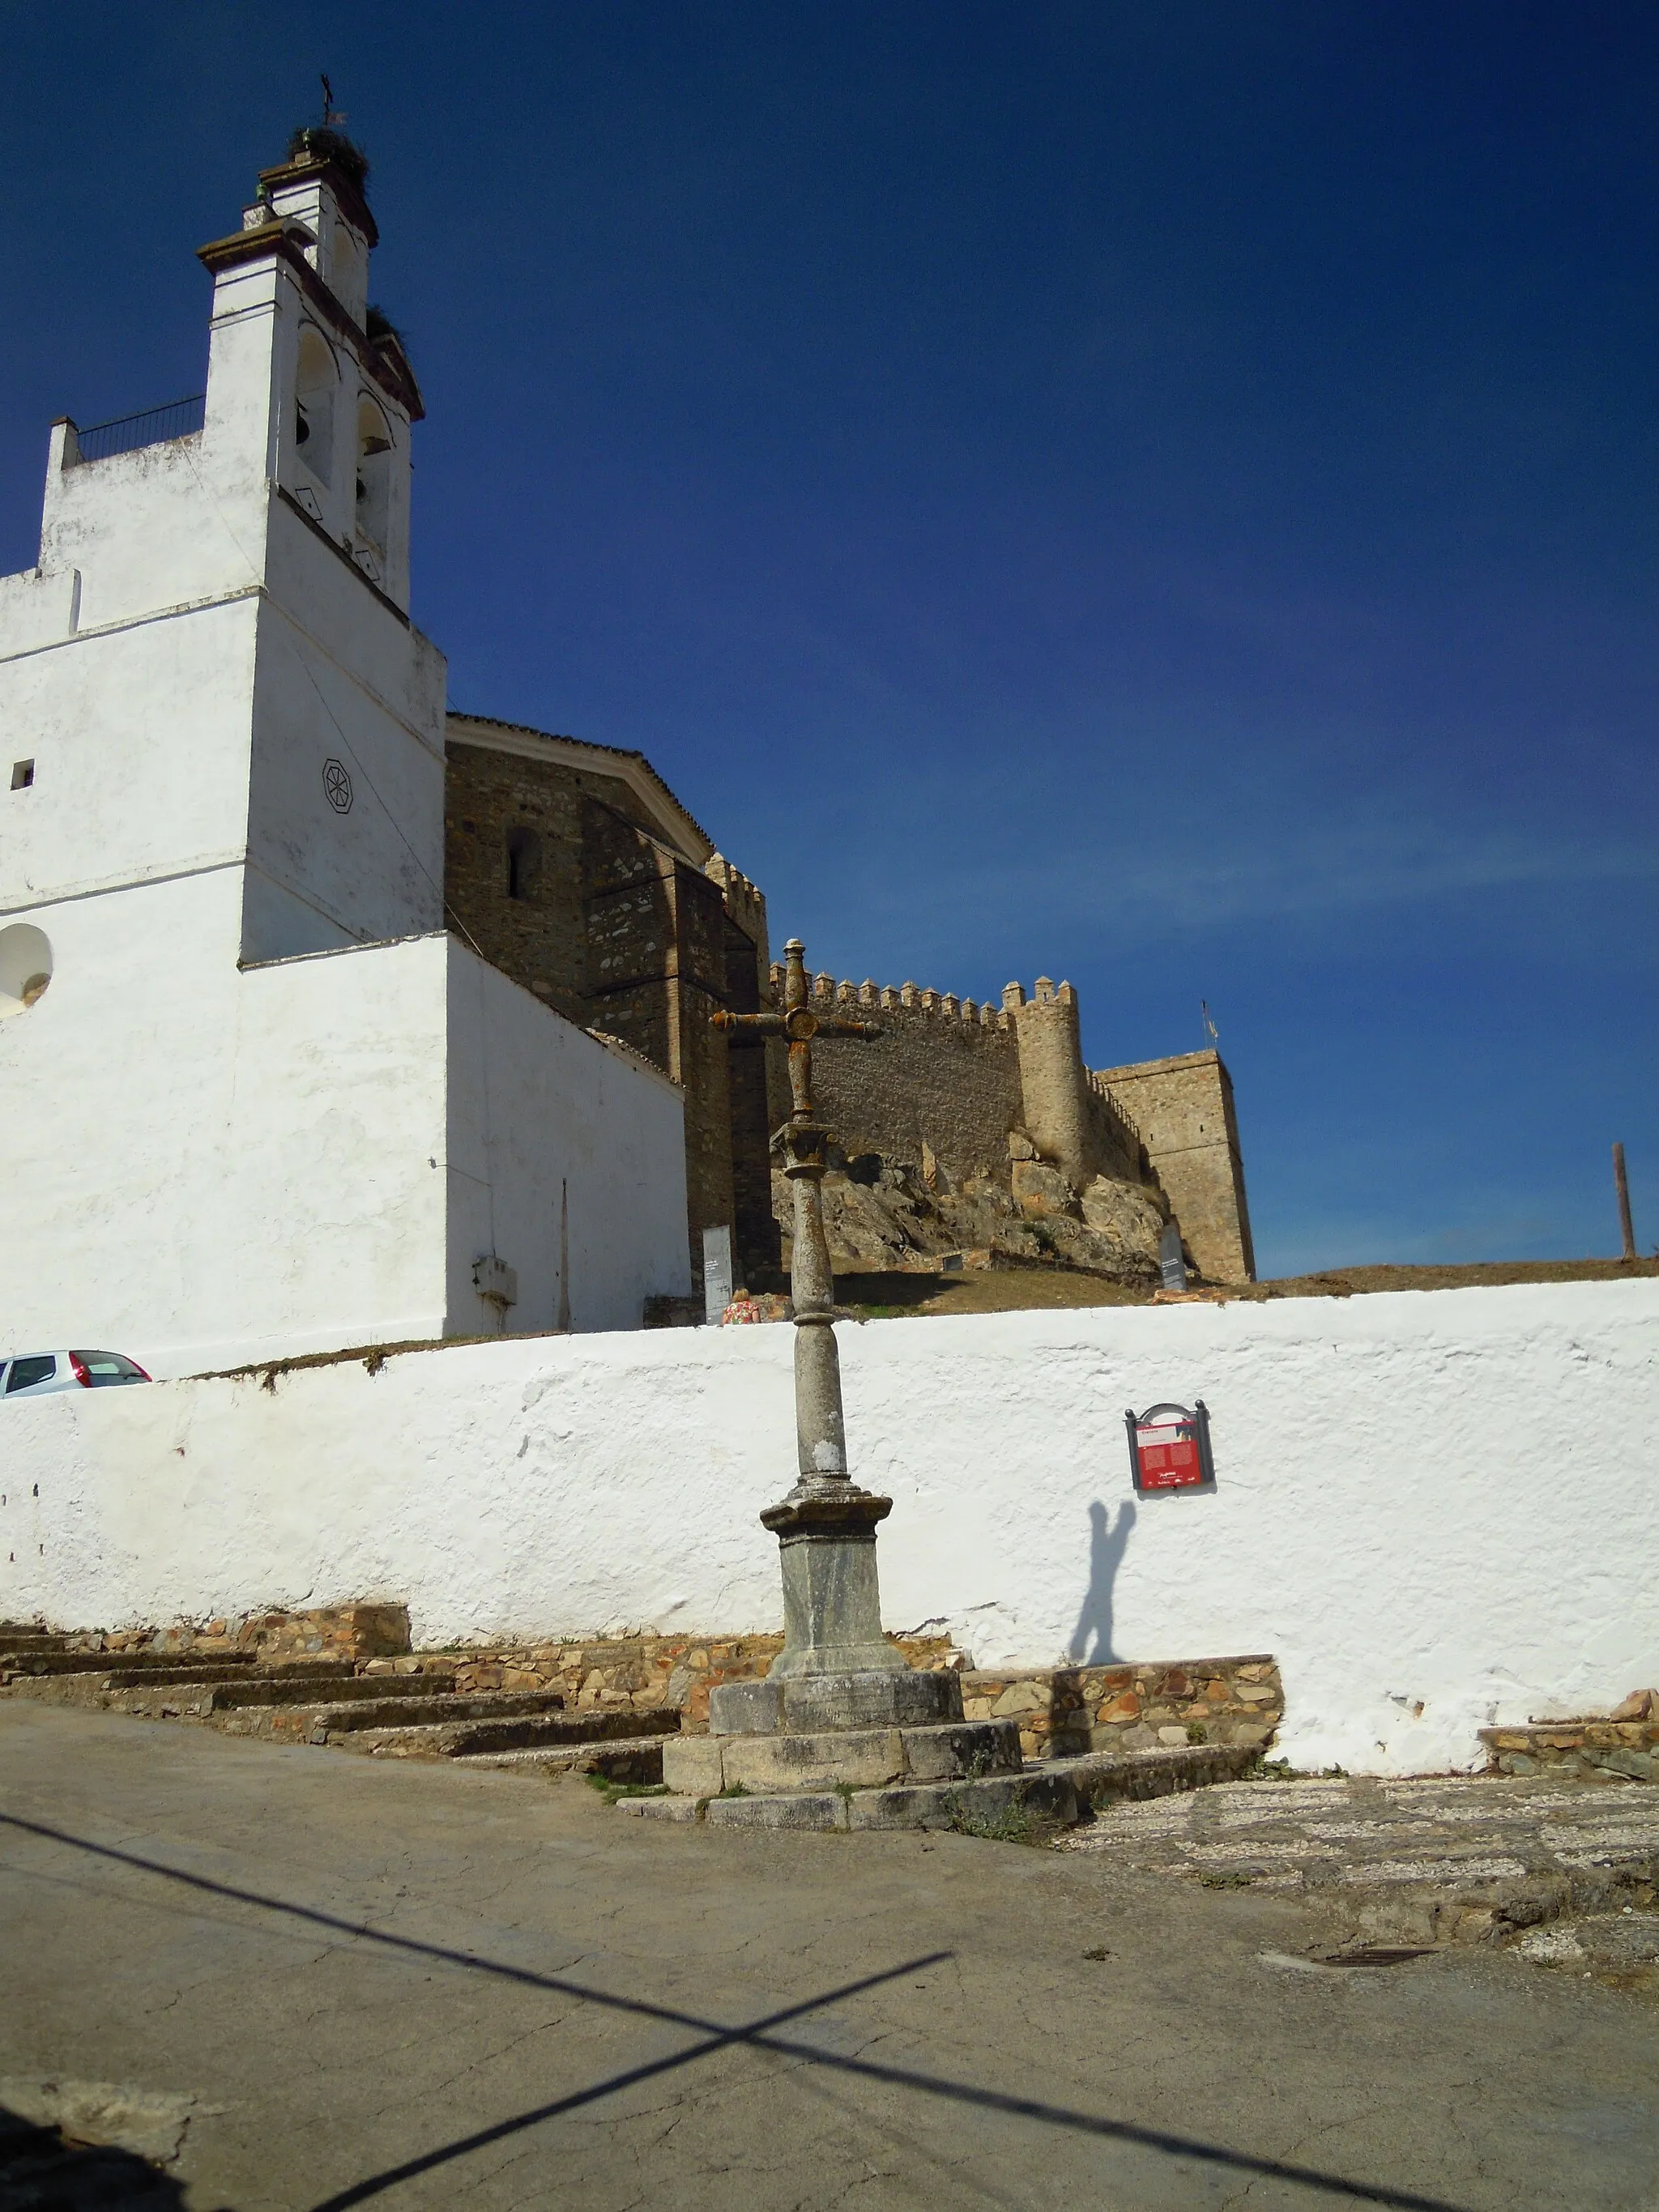 Photo showing: The Church de Nuestra Senora de la Asuncion in the village of Santa Olalla del Cala